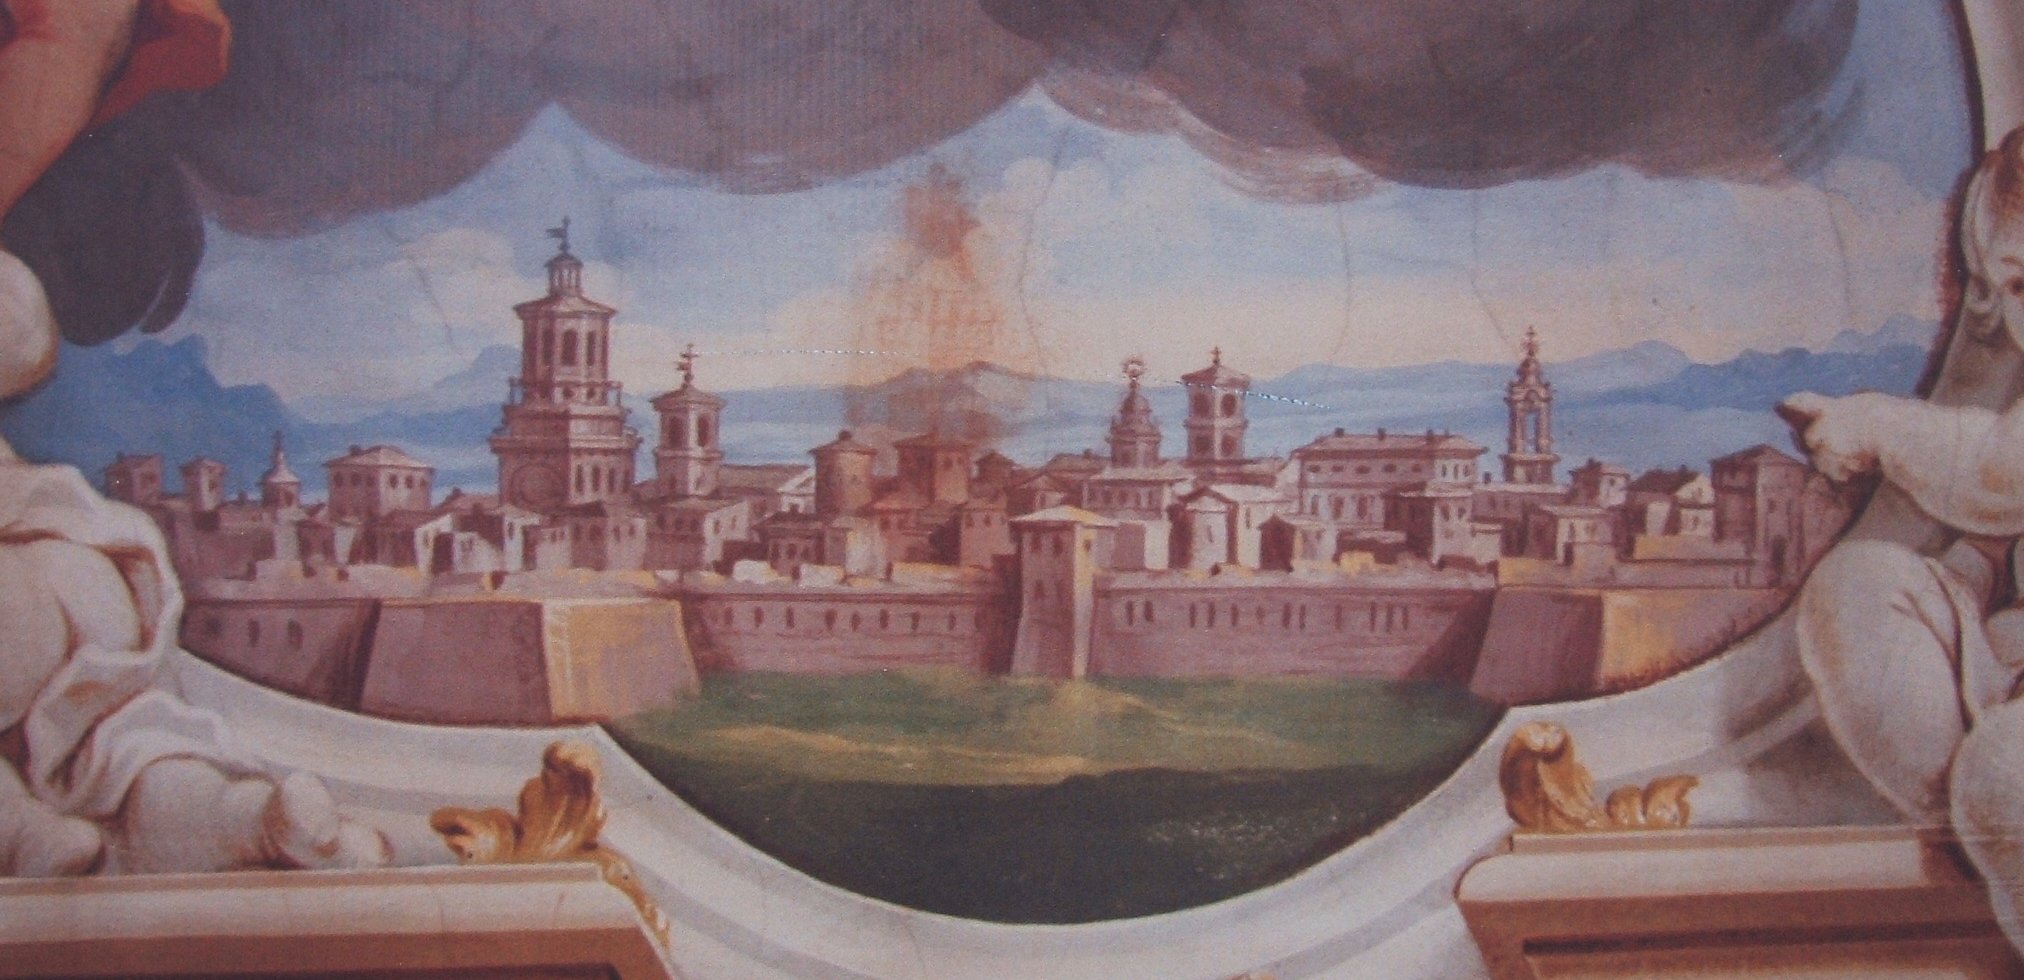 Savigliano im Mittelalter, Fresko in der Kirche „Mariä Himmelfahrt” in Savigliano